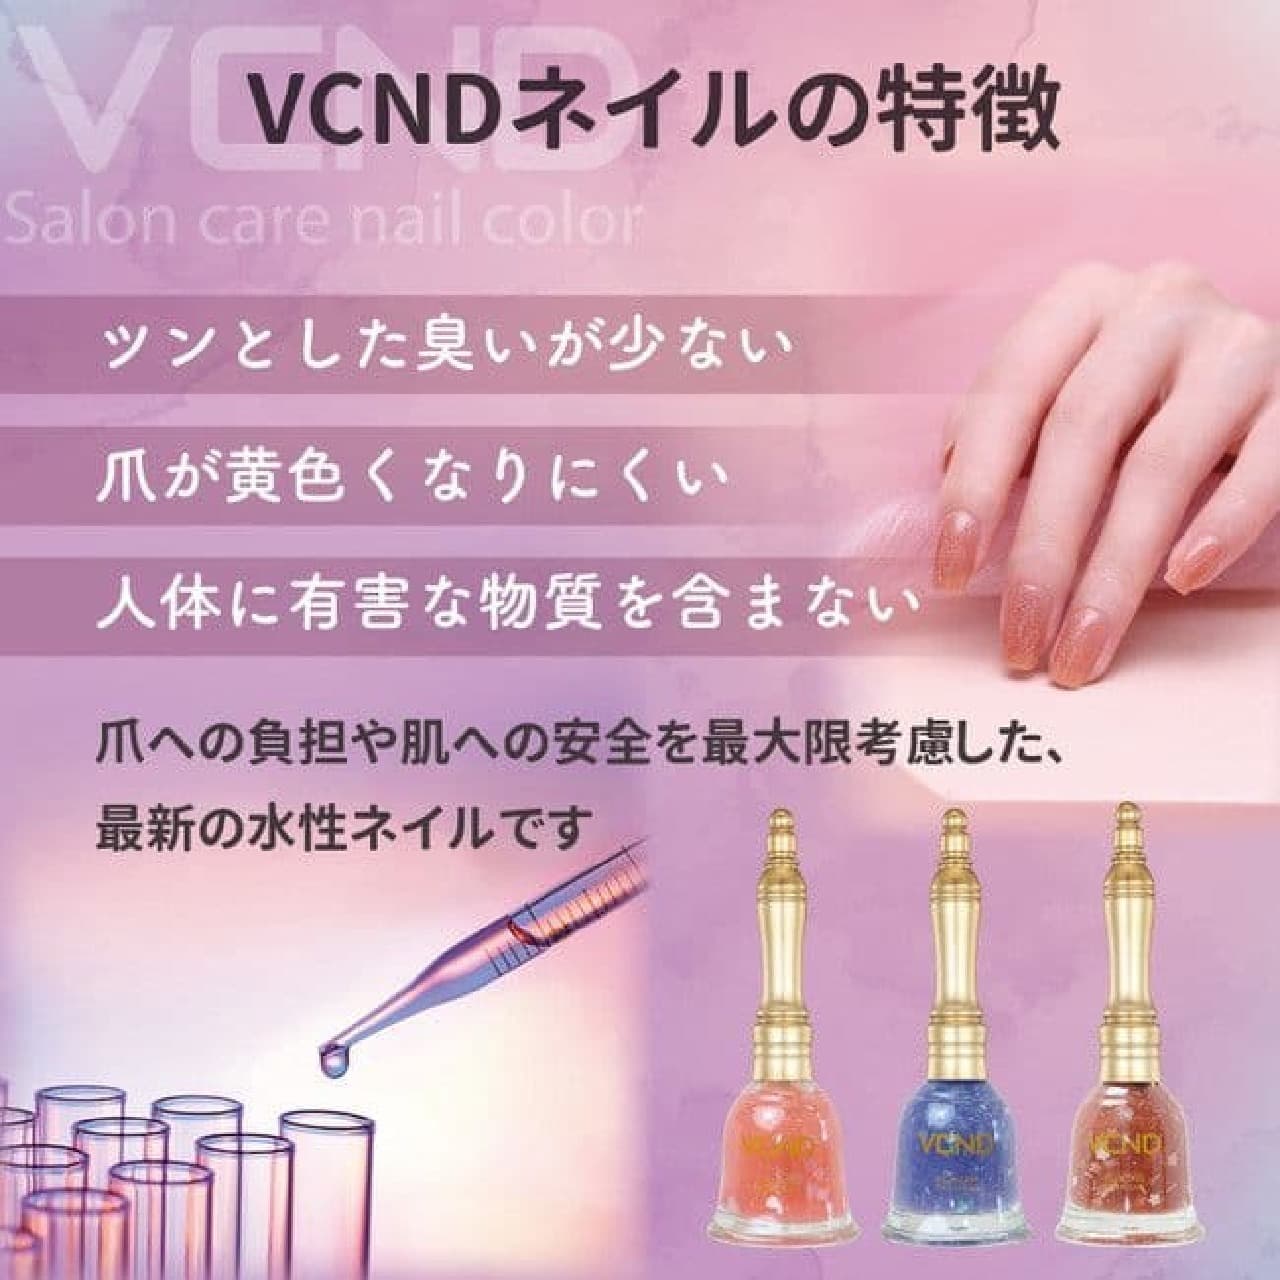 VCND "Blue Sky Nail"